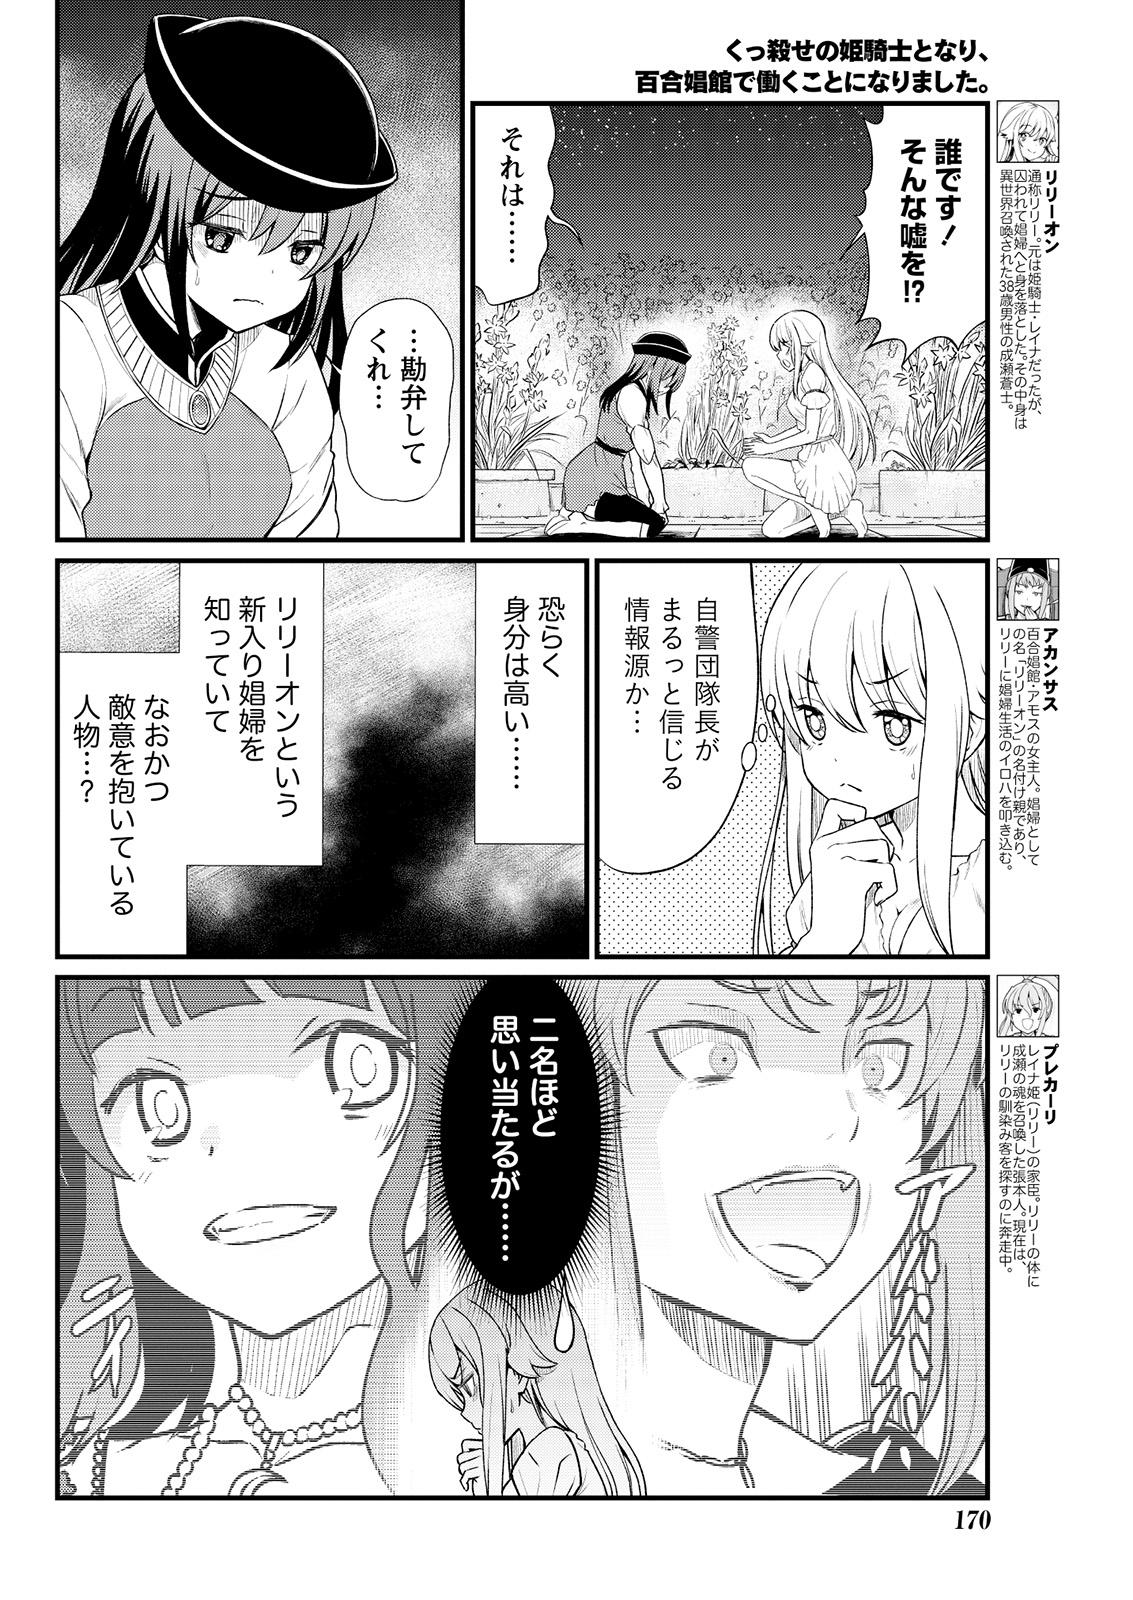 Flash Kukkorose no Himekishi to nari, Yuri Shoukan de Hataraku koto ni Narimashita. 6 Latinos - Page 6